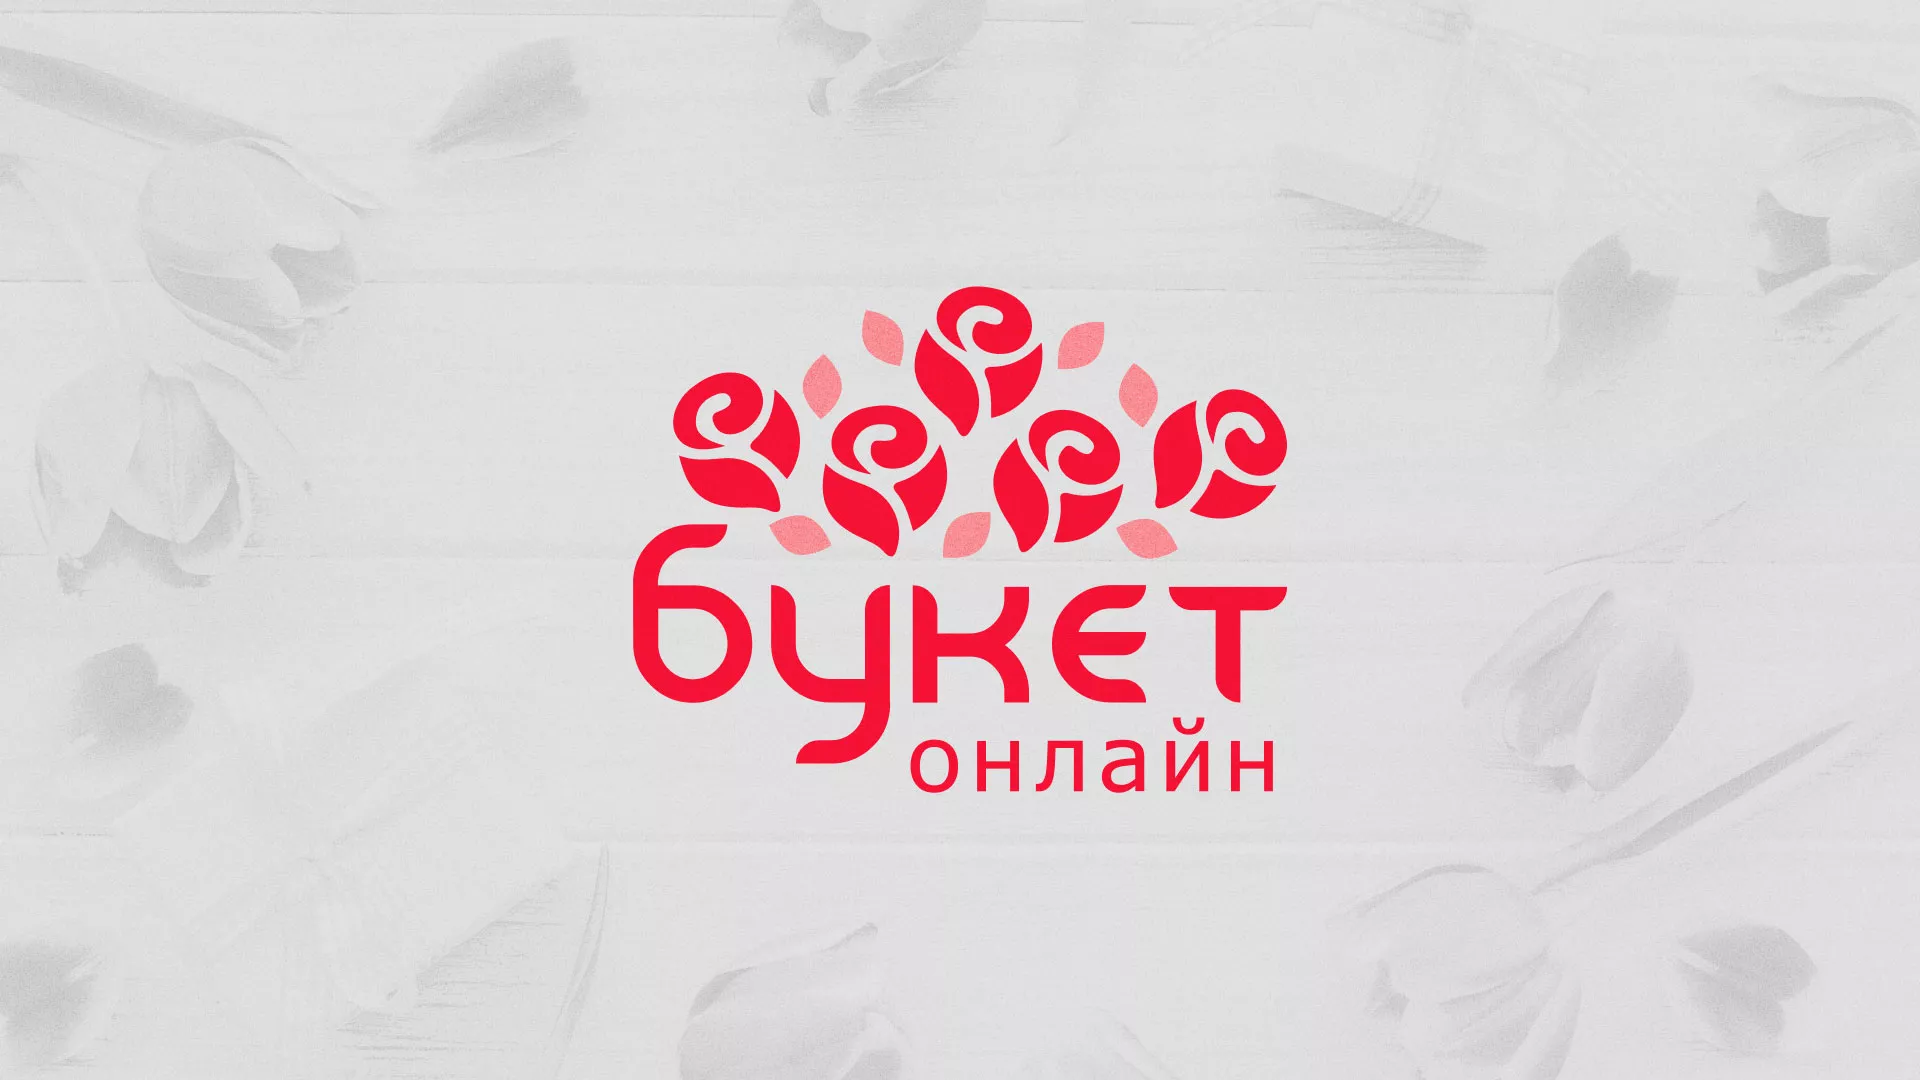 Создание интернет-магазина «Букет-онлайн» по цветам в Игарке